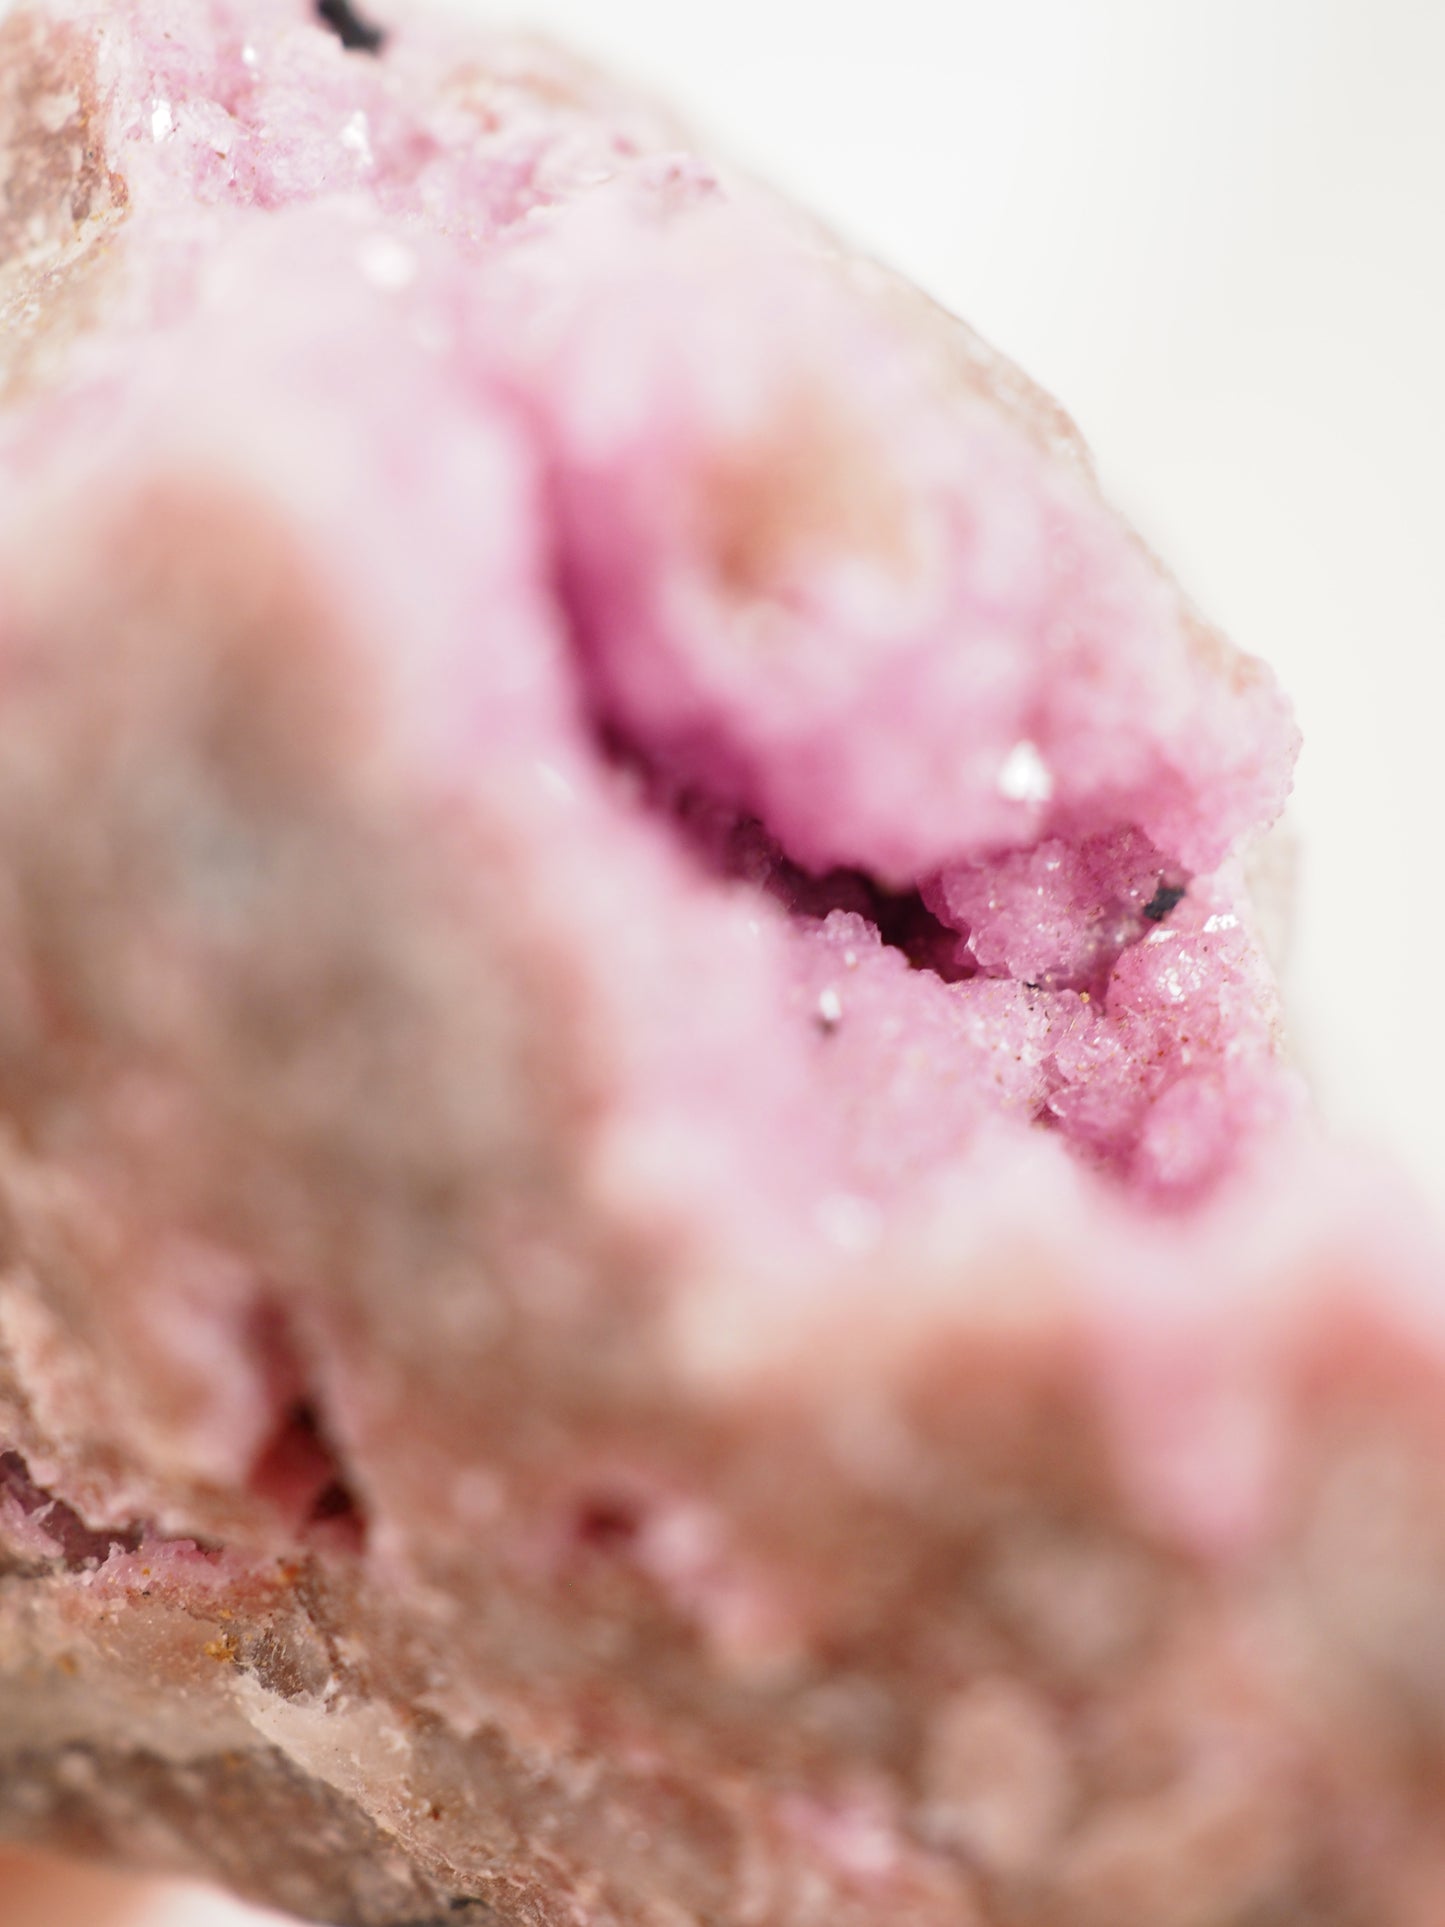 Pink Cobalto Calcite Specimen ca. xx cm [xx]- aus Kongo